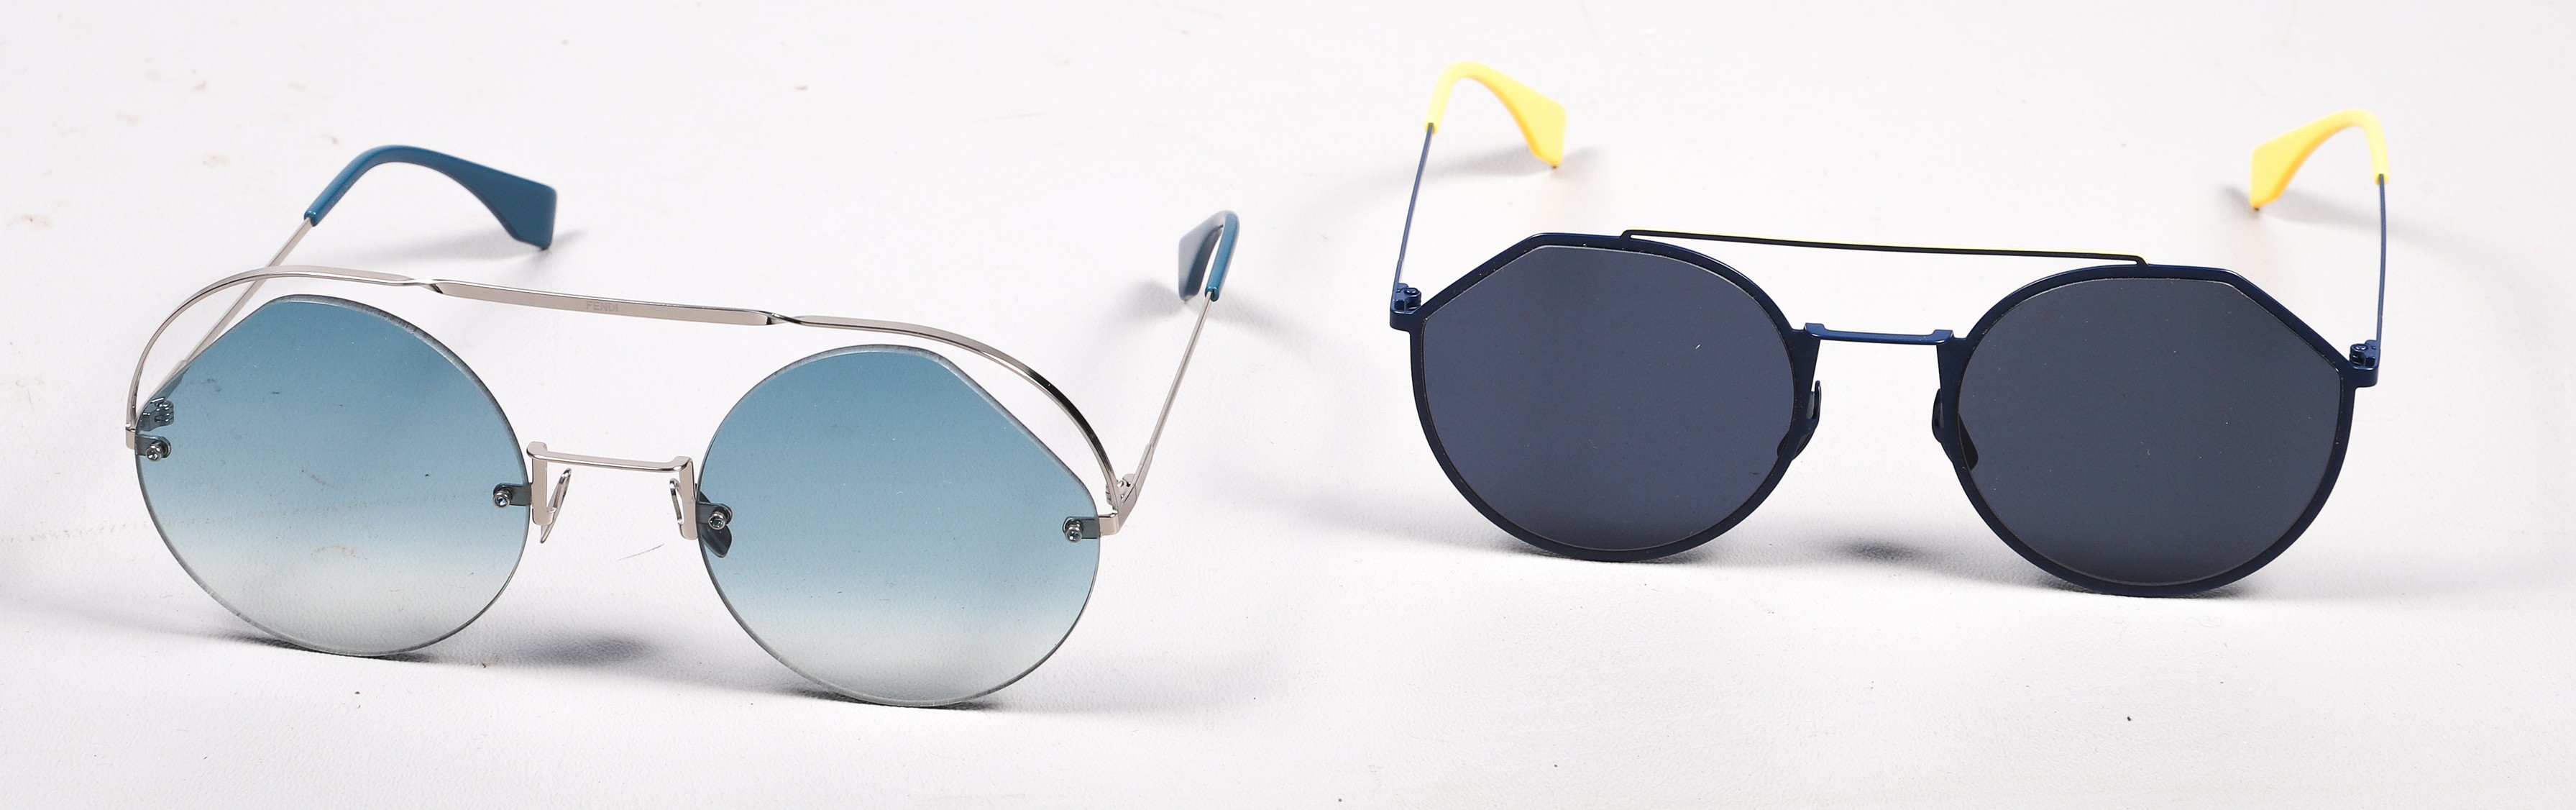 (2) Pair Fendi sunglasses to include